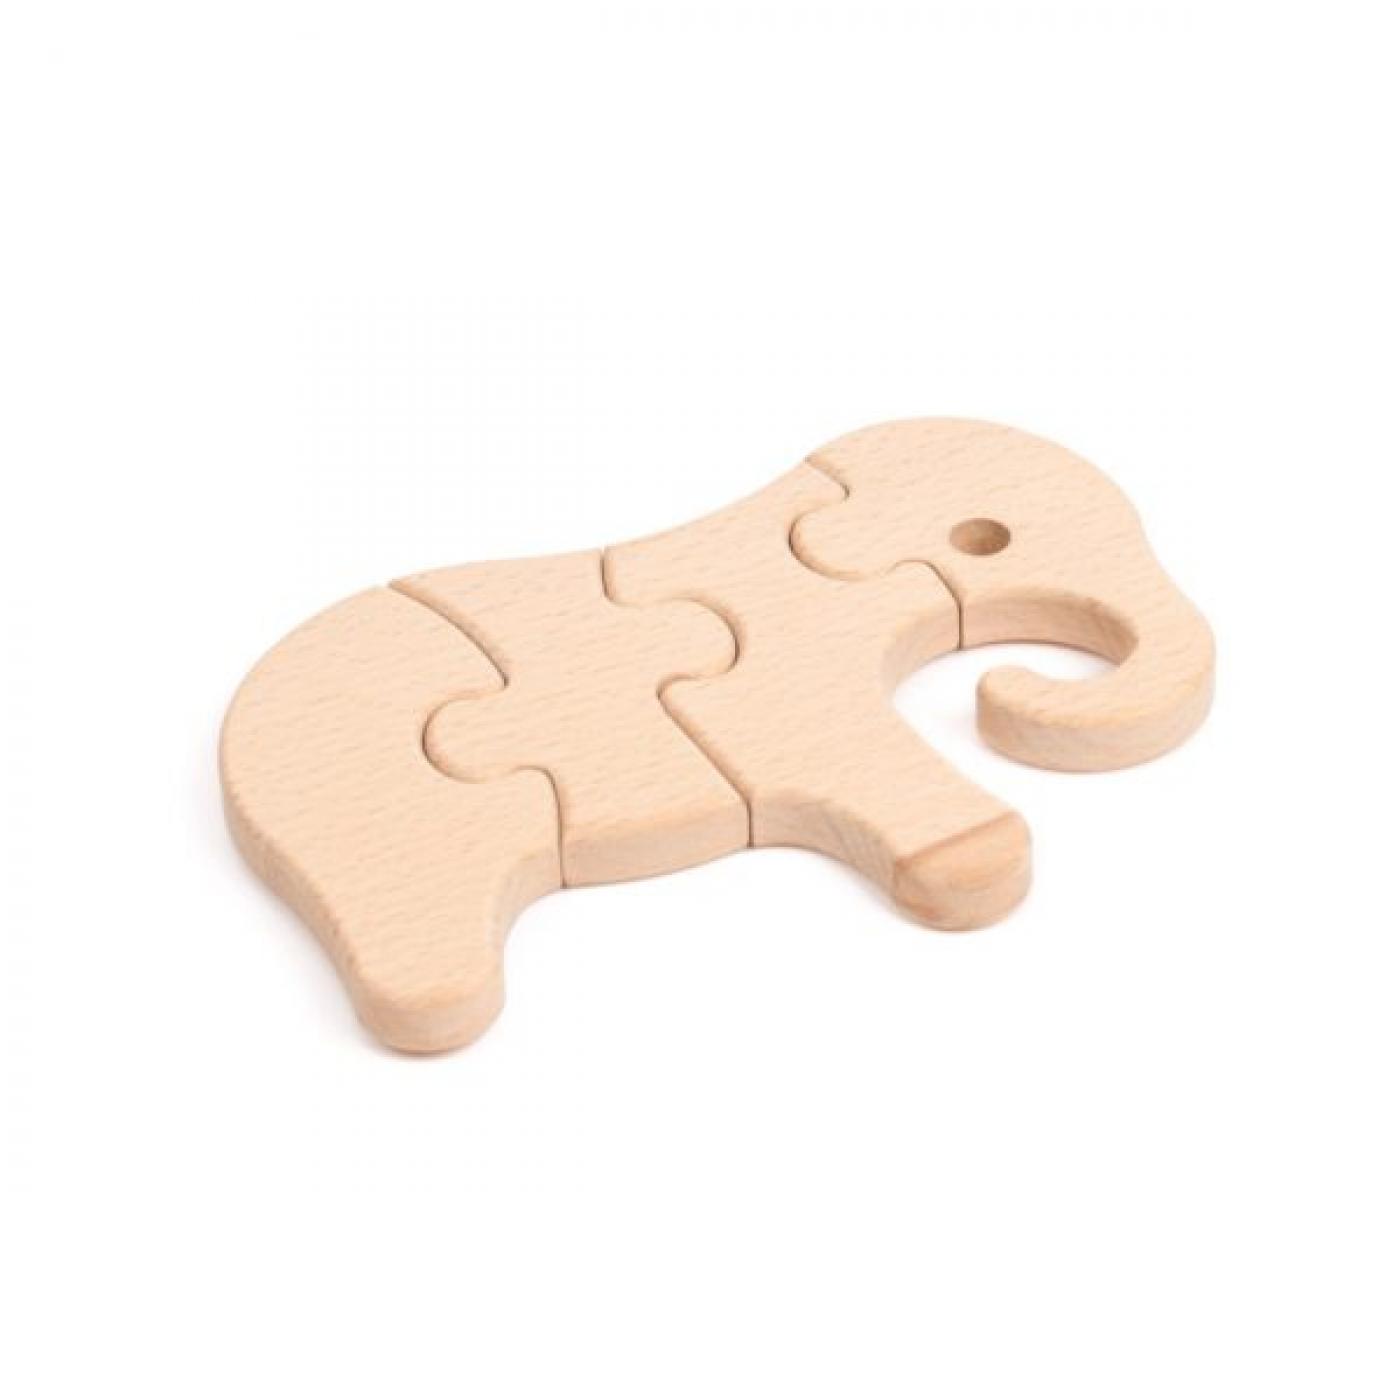 Elefantenpuzzle von Koch Systems Holzspielzeug Onlineshop.